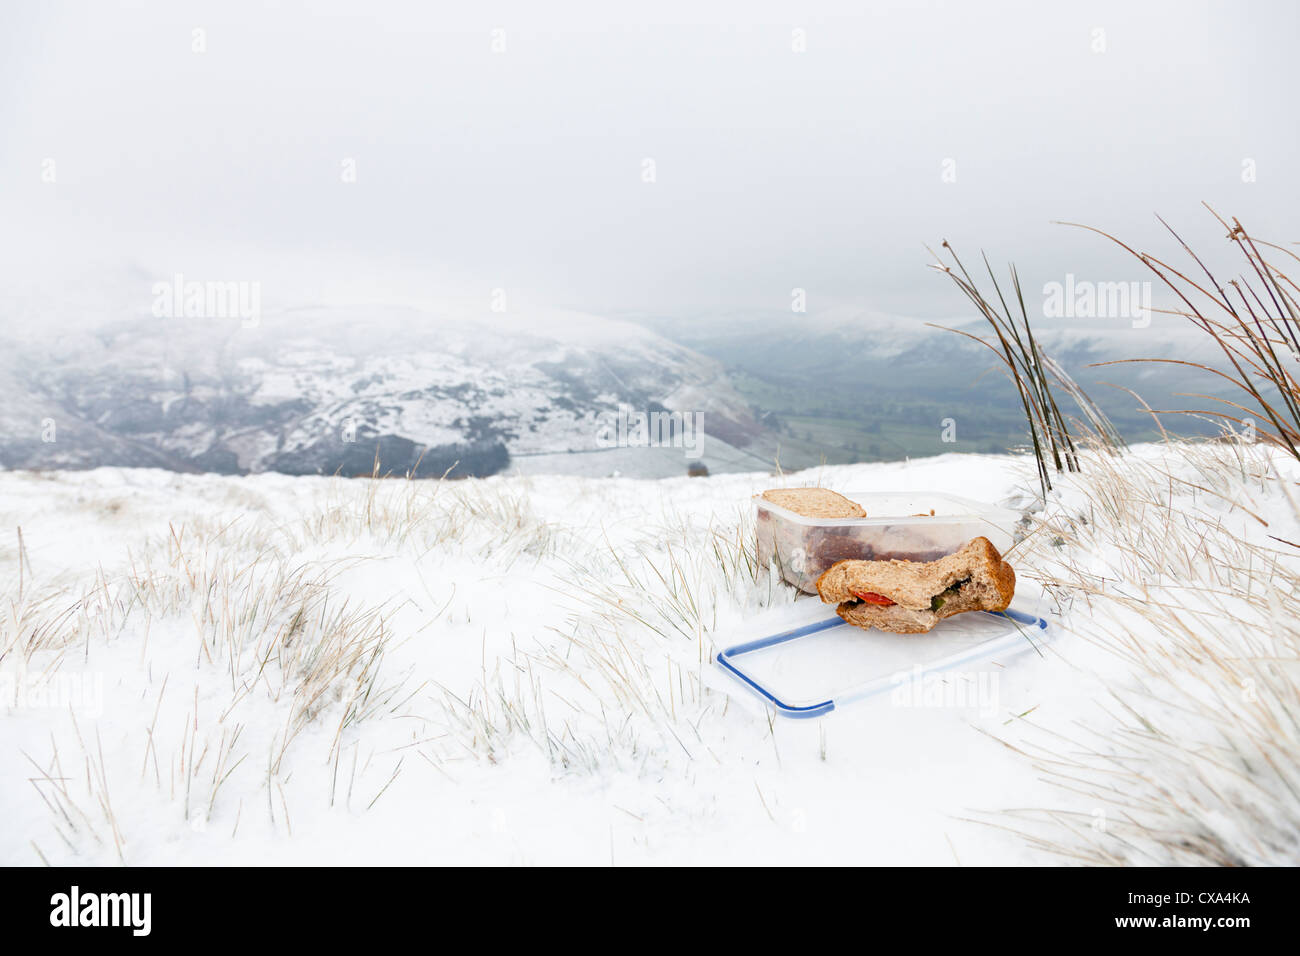 Teil gegessen Sandwich aus einem Lunchpaket, Sandwiches in der Landschaft im Winter Schnee. Zugehörigkeit zu einem Wanderer, Walker oder Wanderer. England, Großbritannien Stockfoto